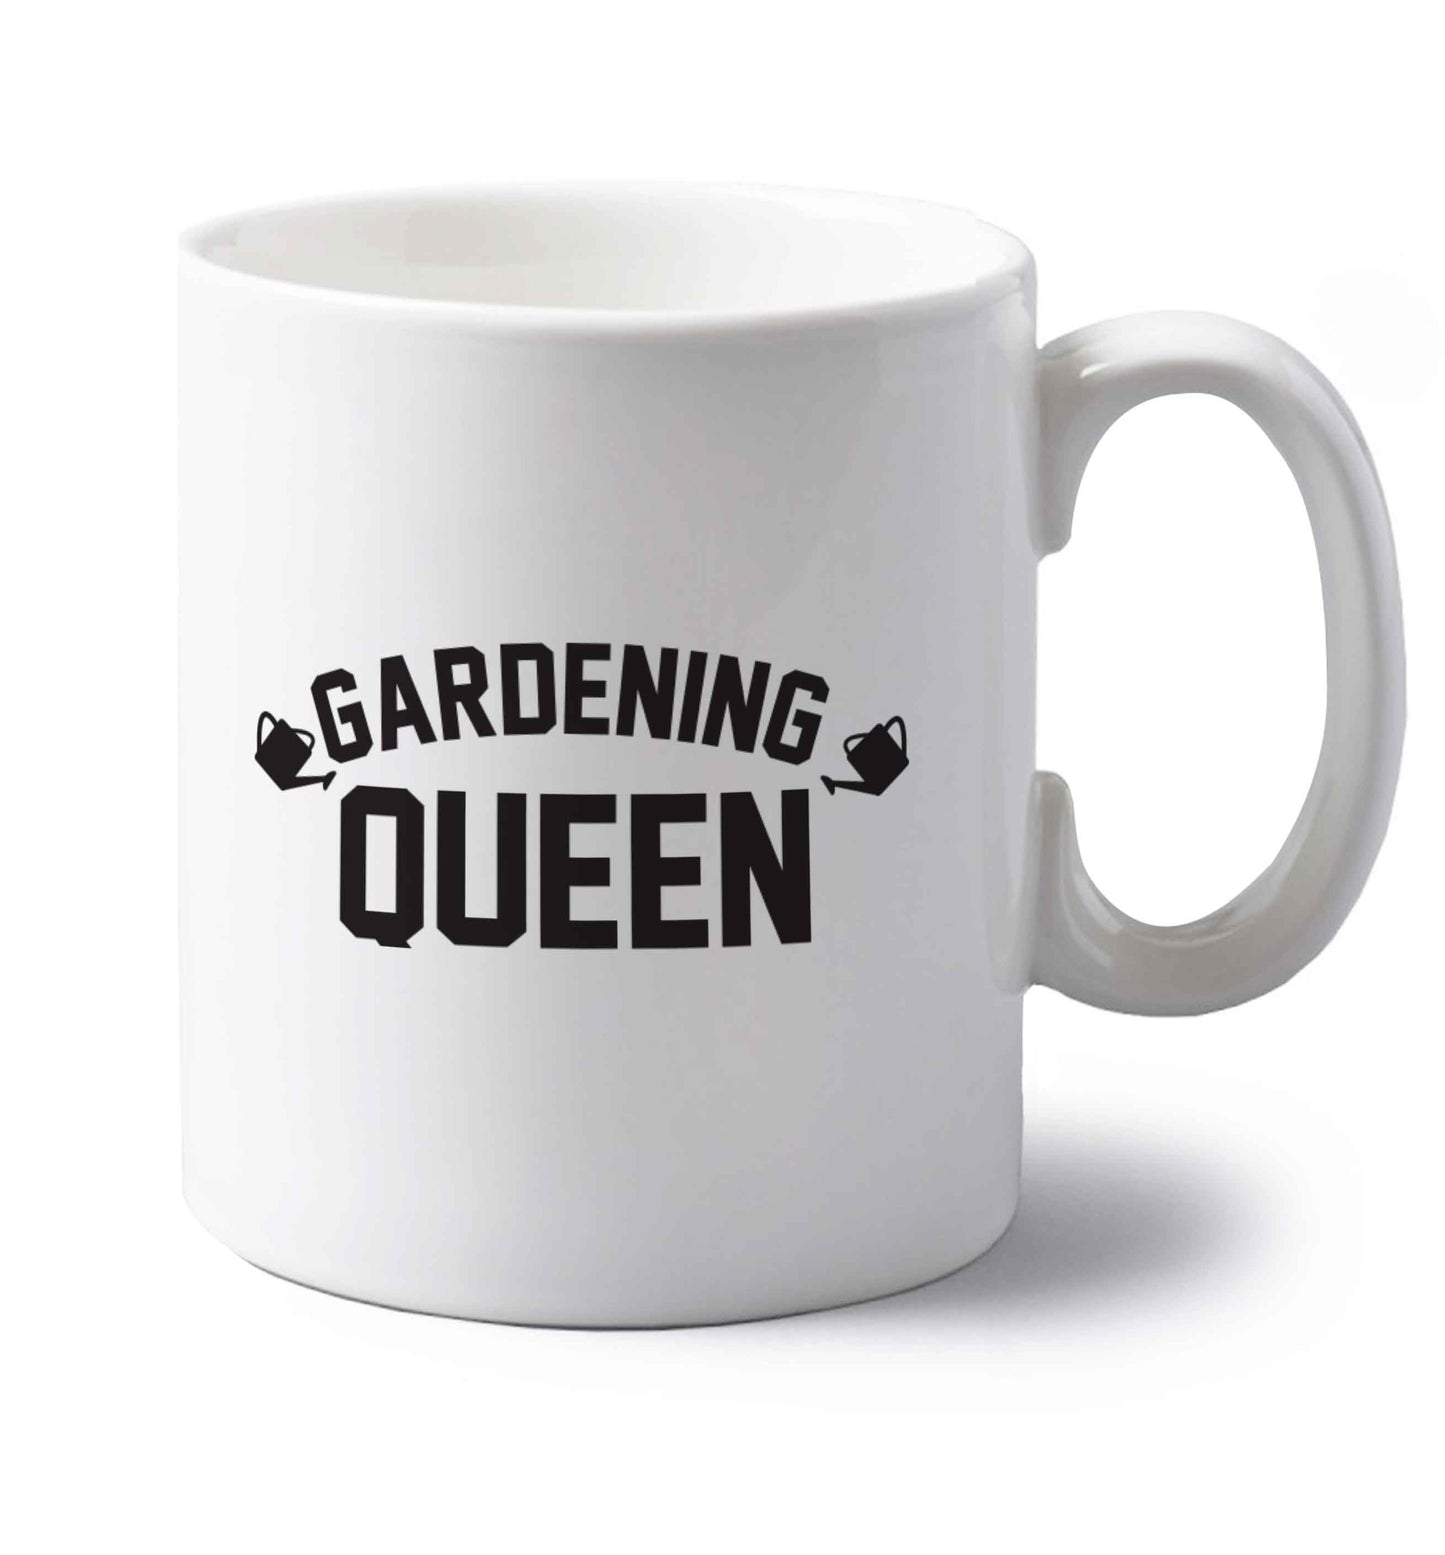 Gardening queen left handed white ceramic mug 